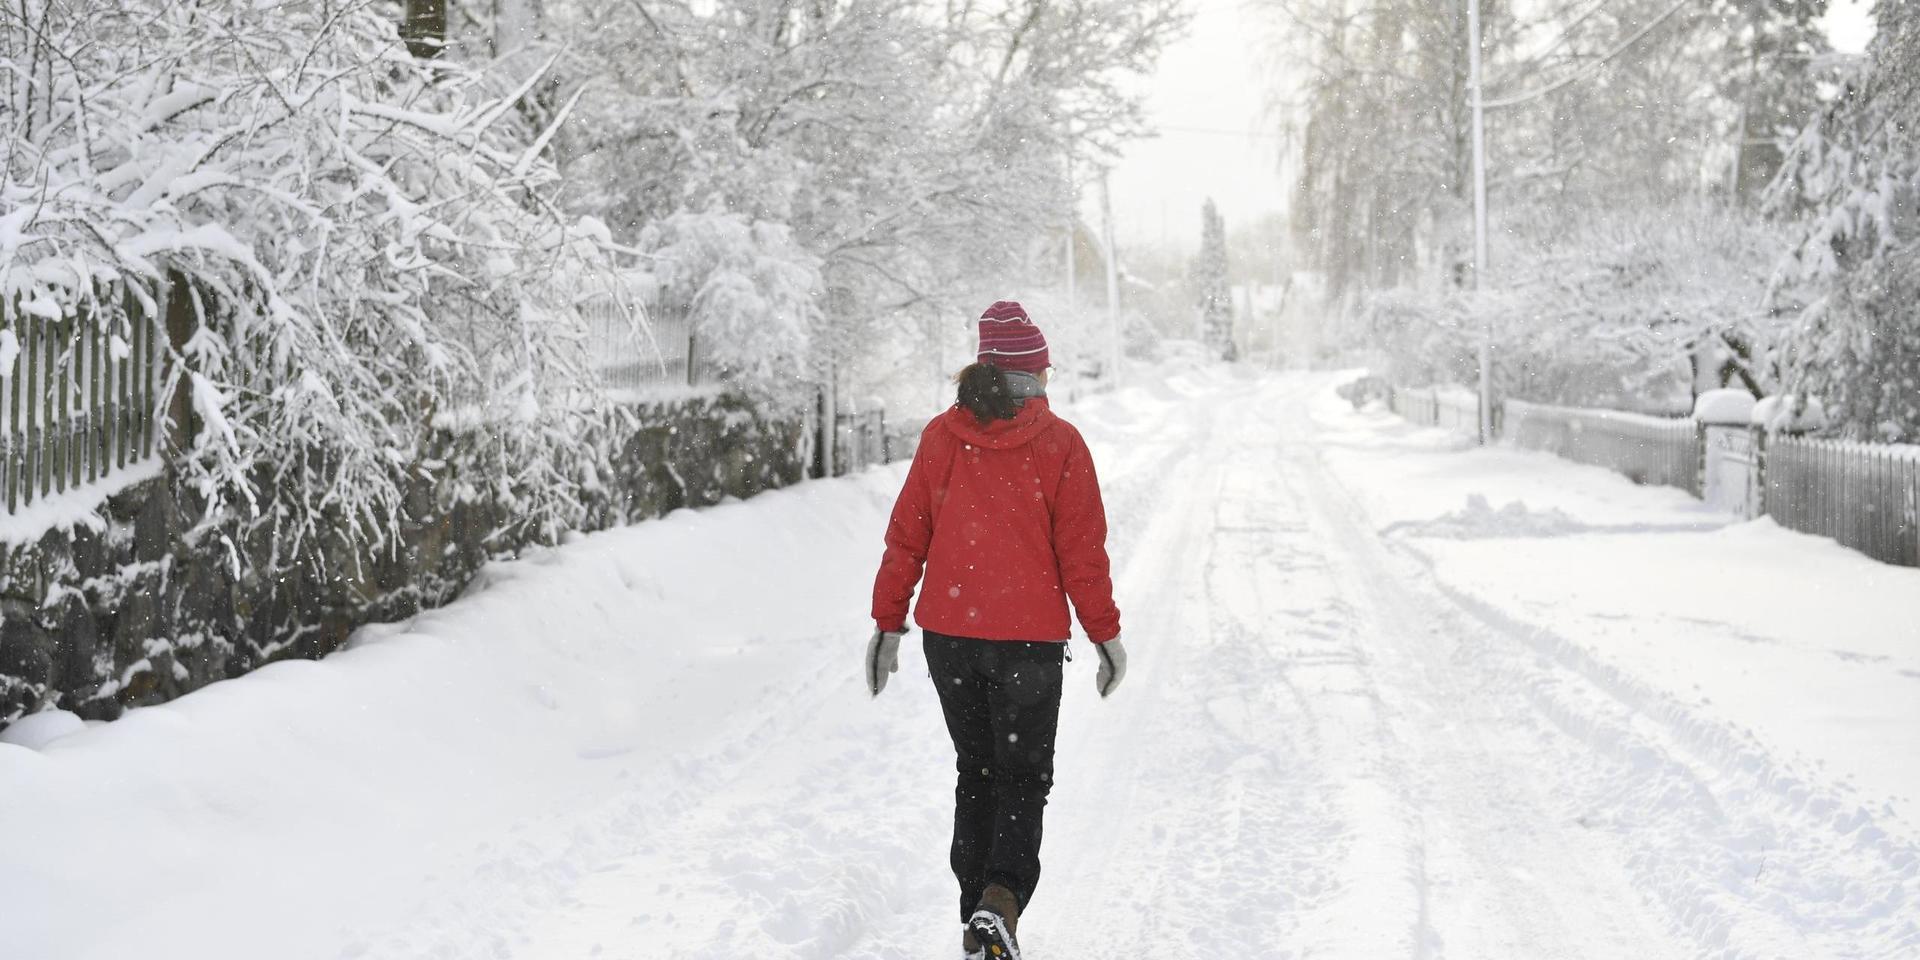 Från och med trettondedag jul finns det goda chanser för snö i Göteborg.